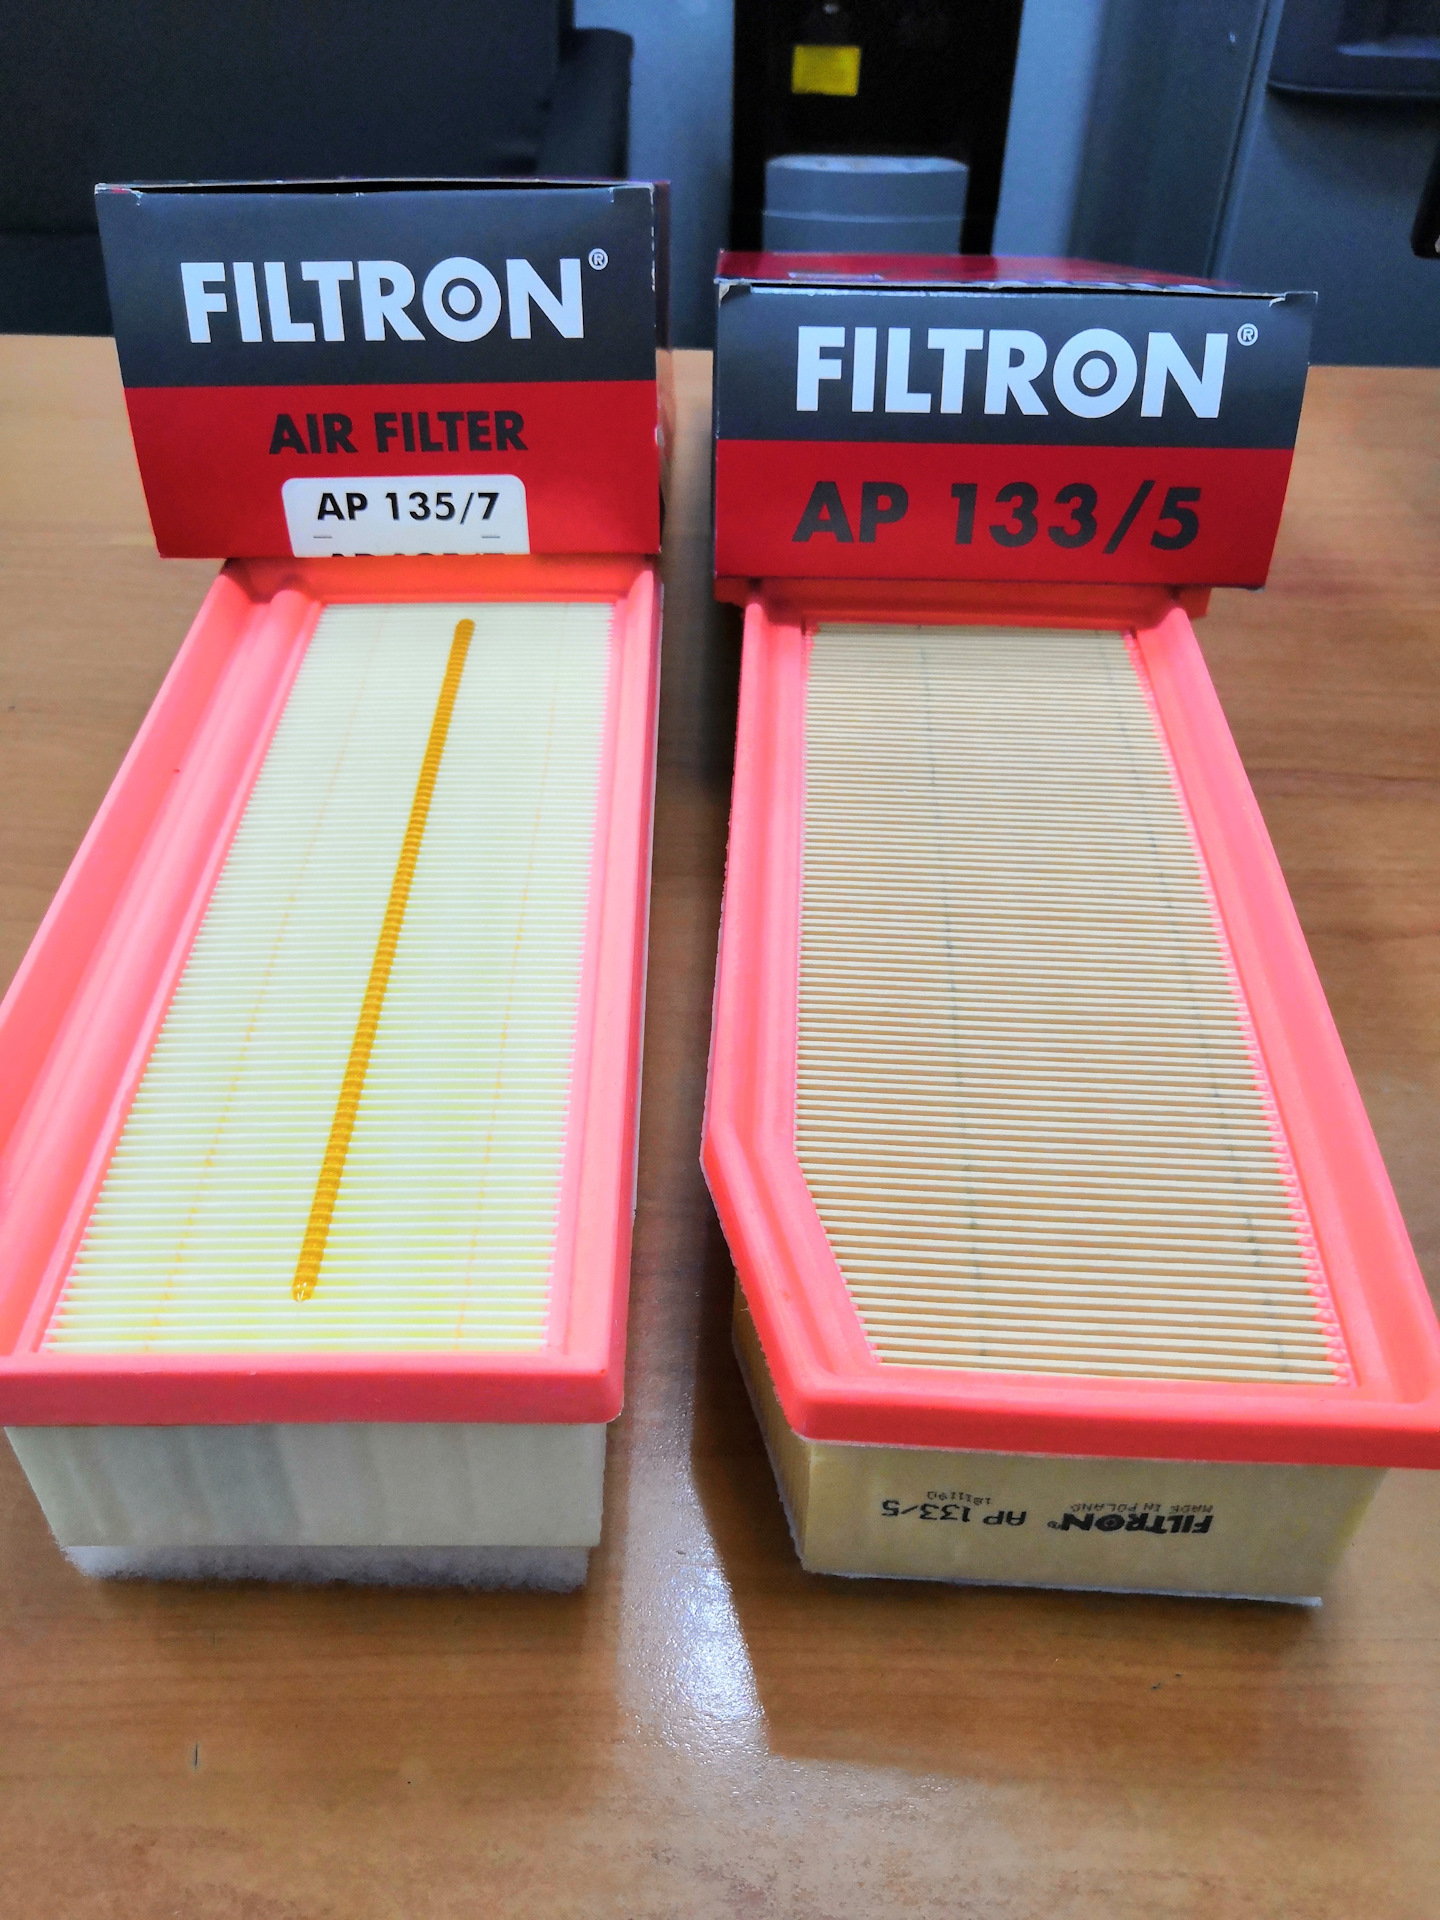 Воздушный фильтр двигателя ларгус. Фильтр воздушный Фильтрон 133/5. FILTRON AP 135/7 фильтр воздушный. FILTRON AP 135/7 фильтр воздушный двигателя.